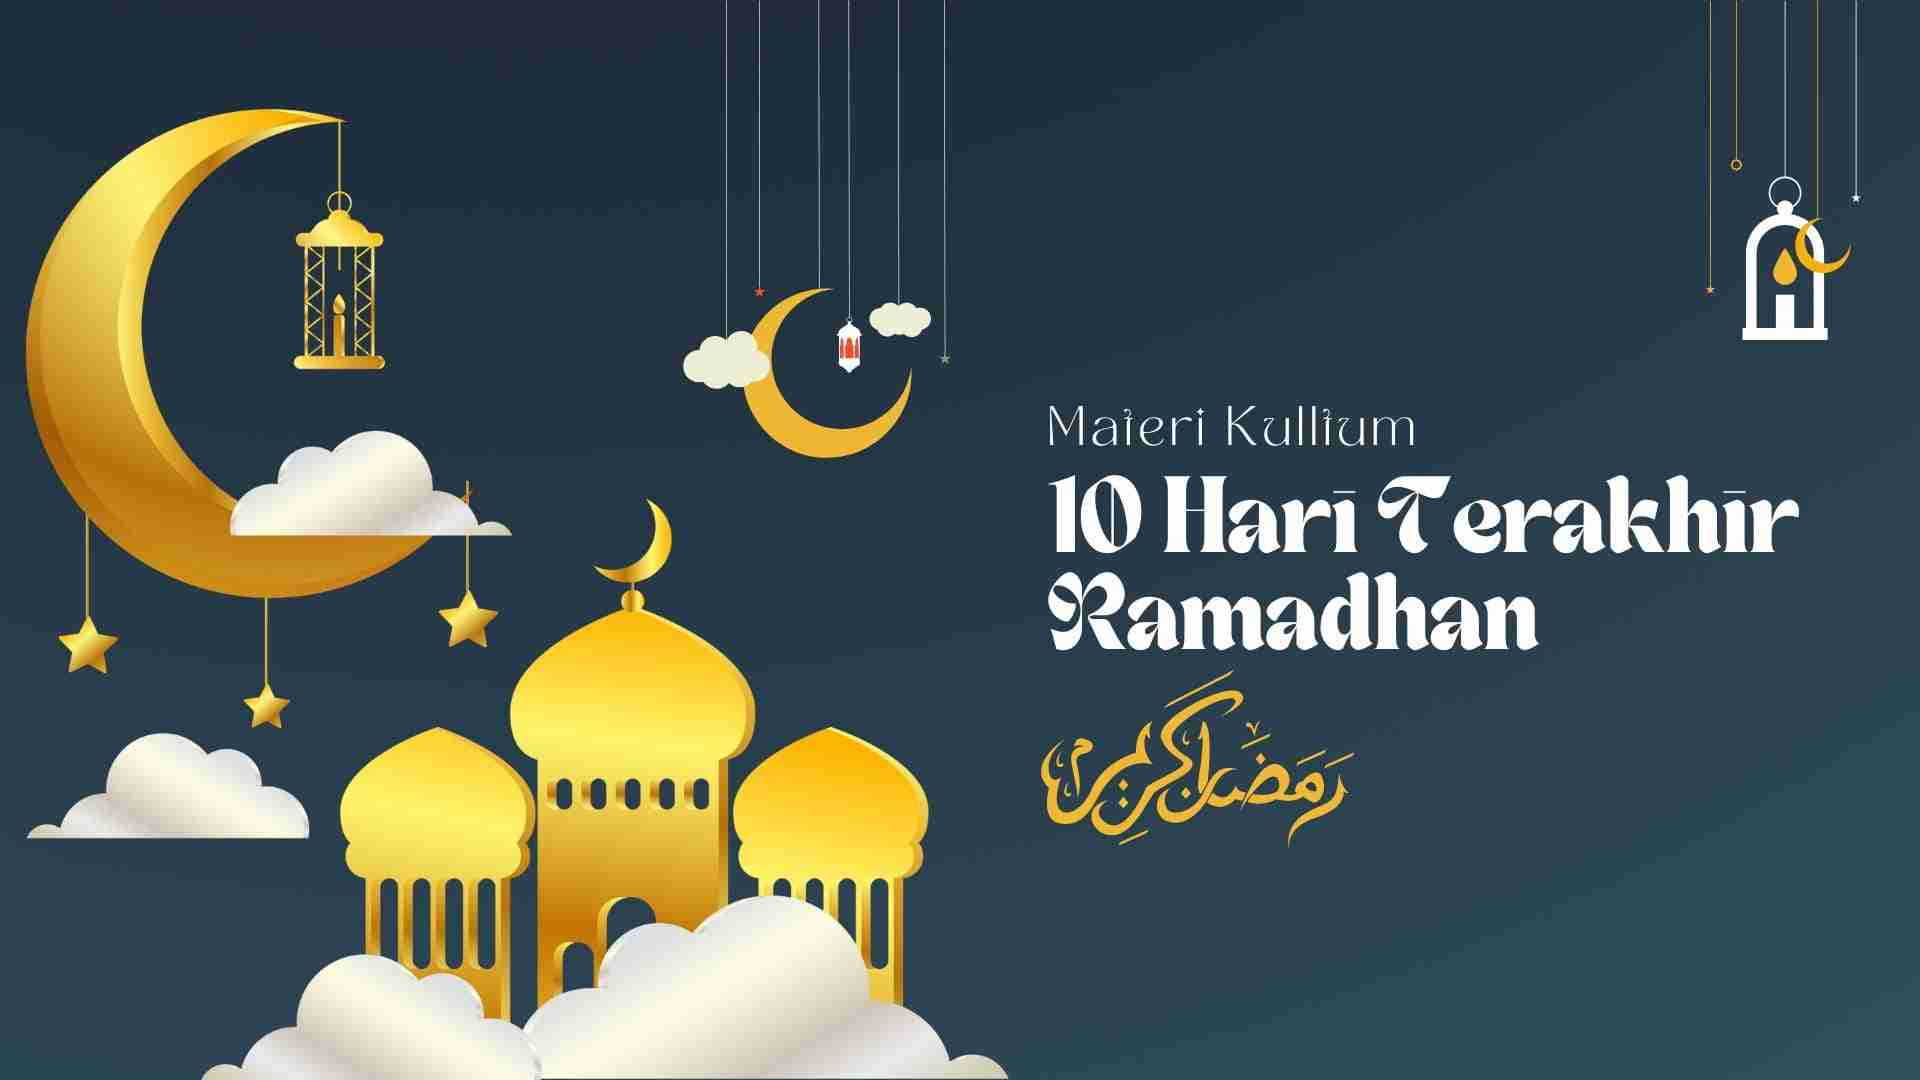 materi kultum 10 hari terakhir ramadhan